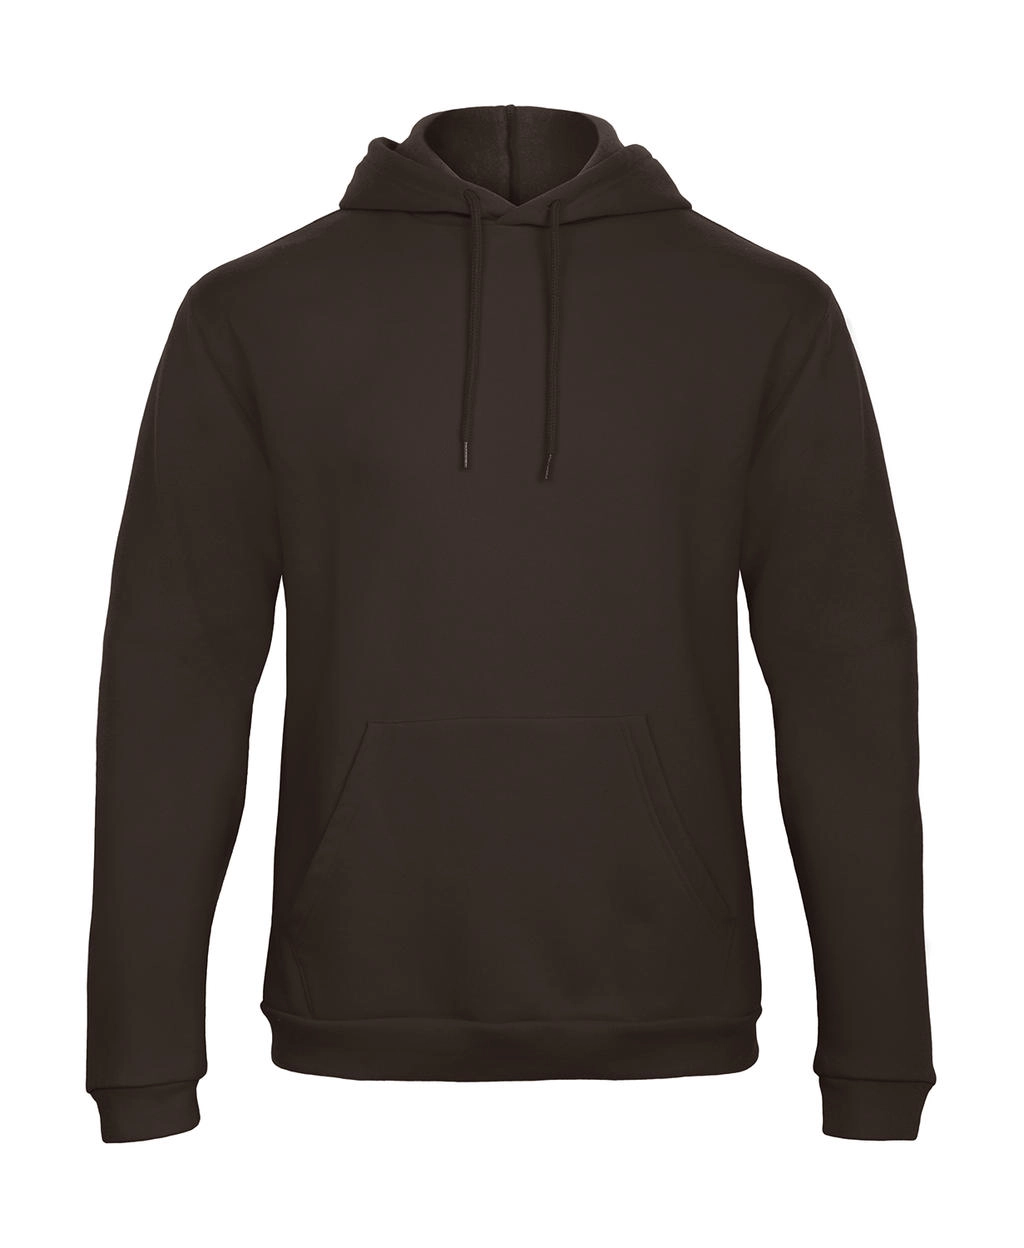 ID.203 50/50 Hooded Sweatshirt Unisex  zum Besticken und Bedrucken in der Farbe Brown mit Ihren Logo, Schriftzug oder Motiv.